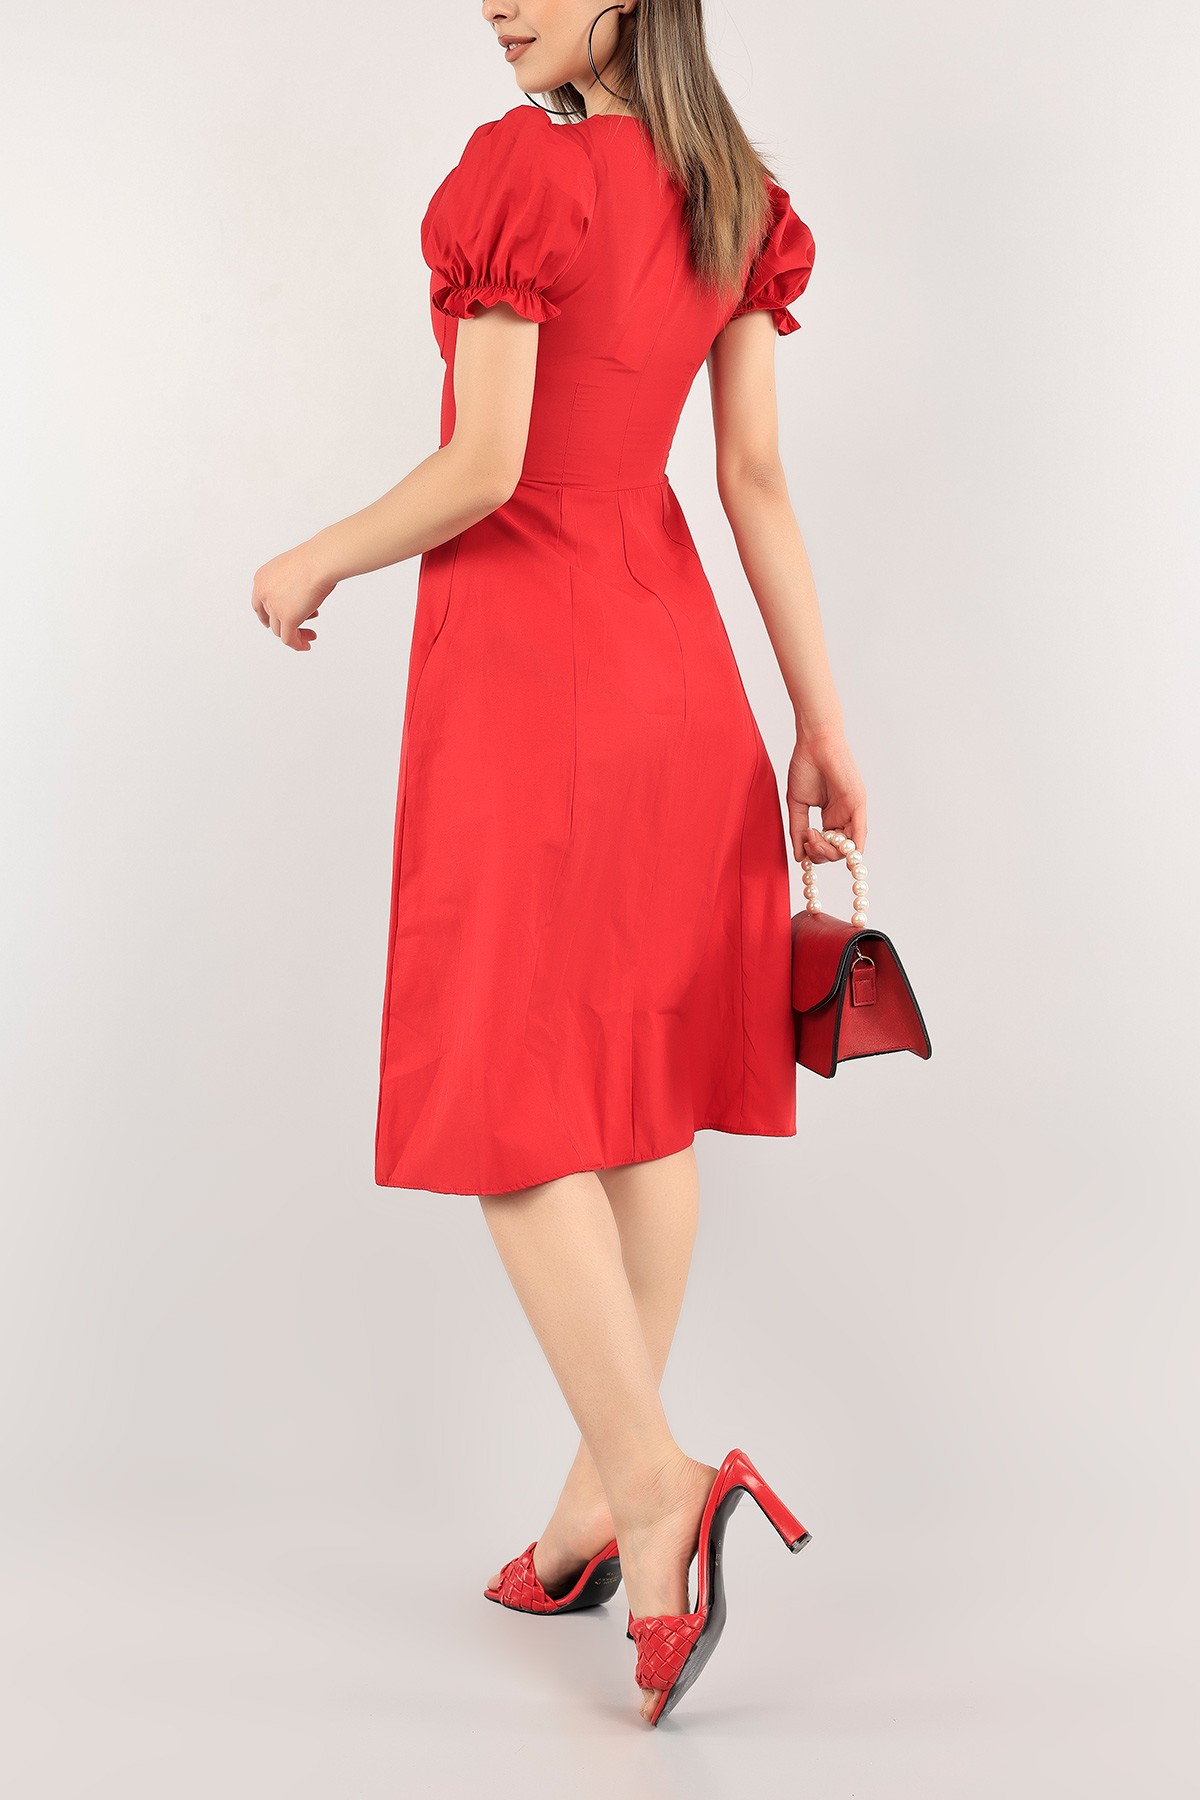 Kırmızı Boydan Düğmeli Büzgülü Poplin Elbise 113598